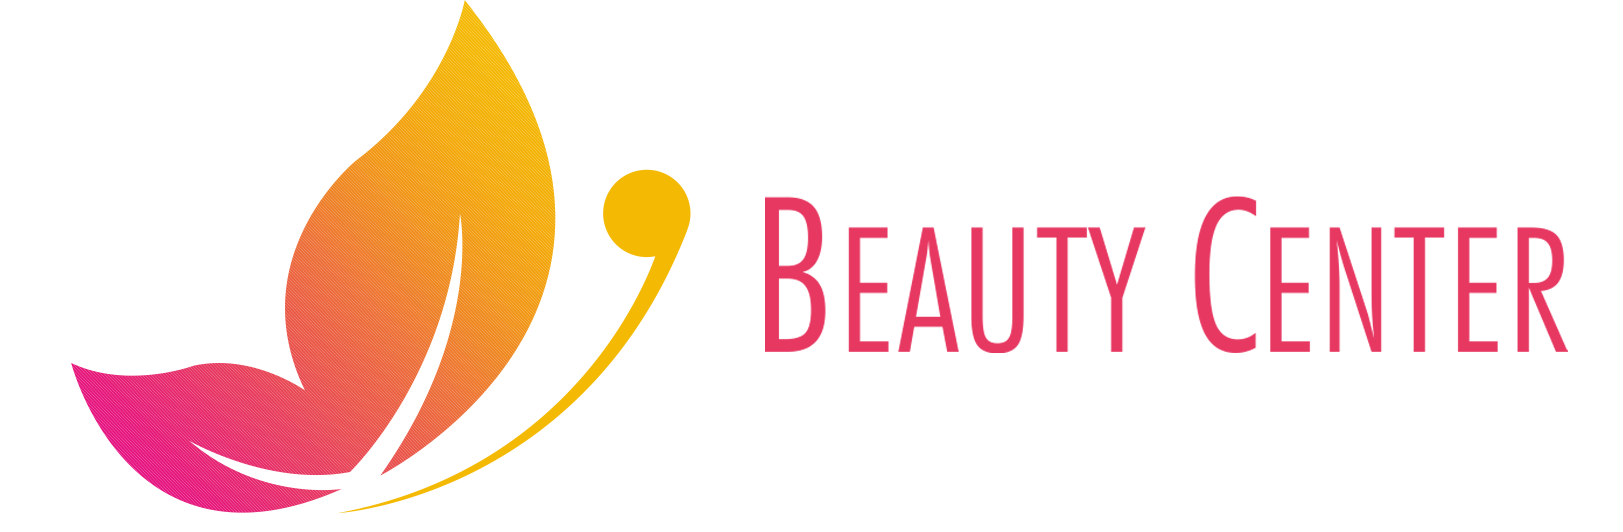 Beauty Center - Sito web per centri estetici e Spa